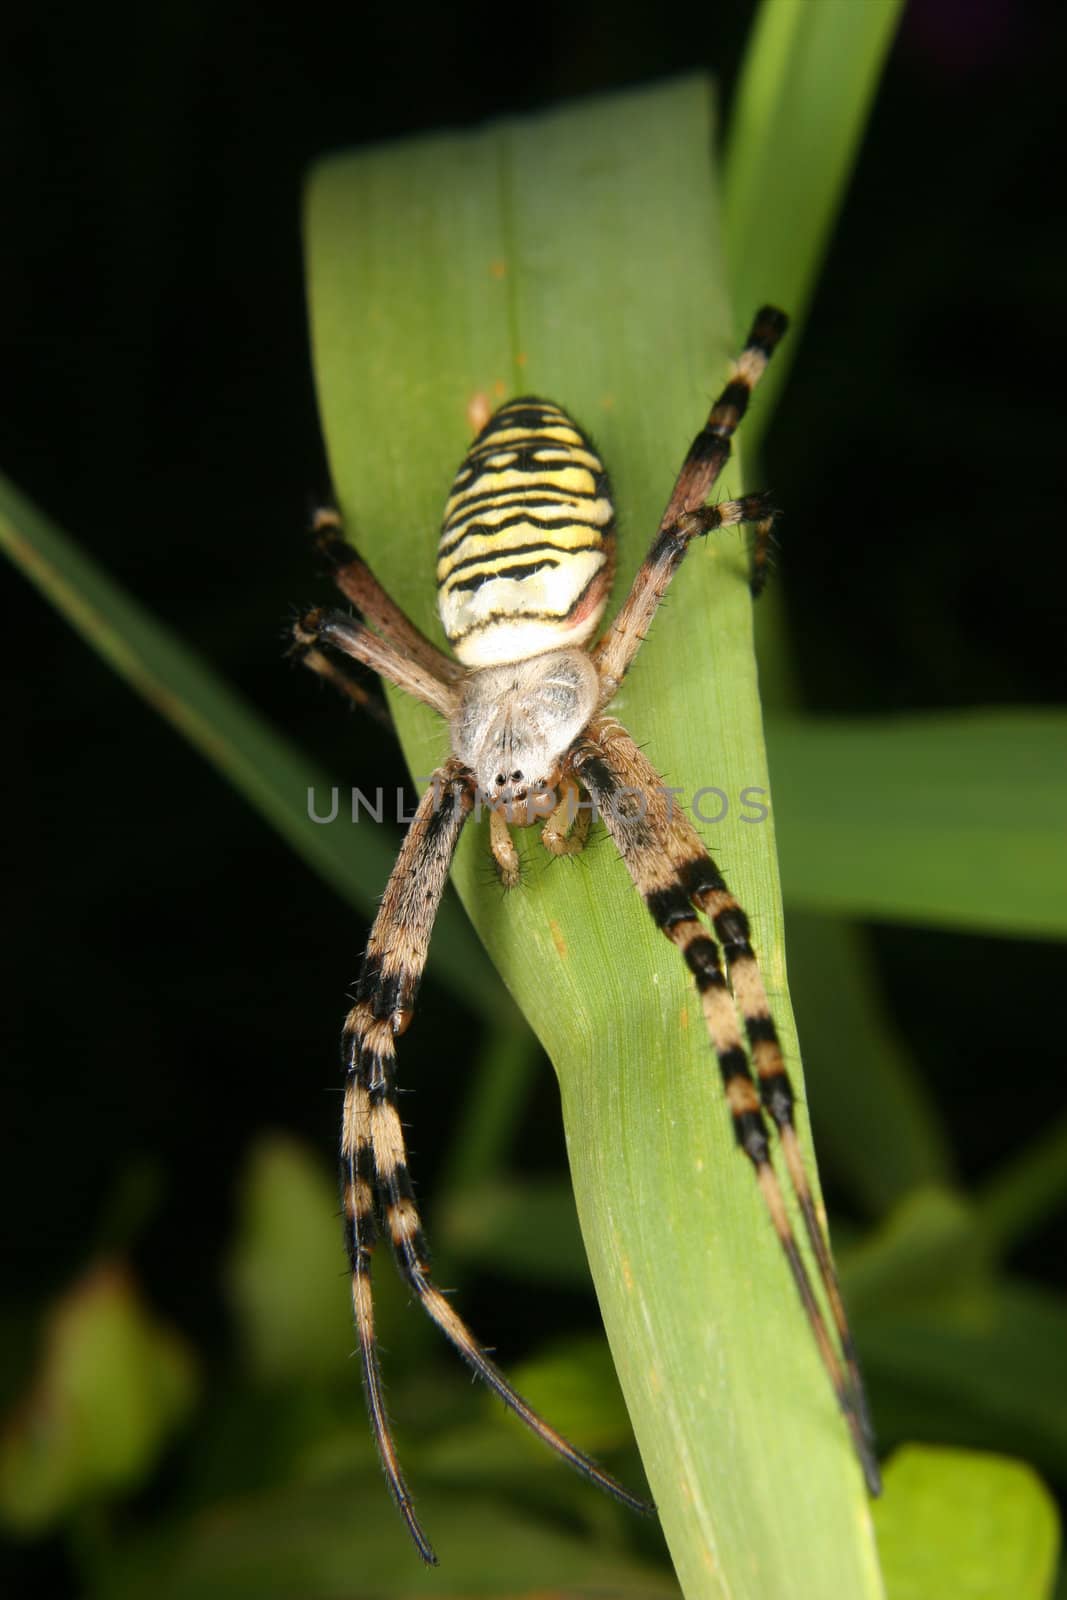 Wasp spider (Argiope bruennichi) by tdietrich